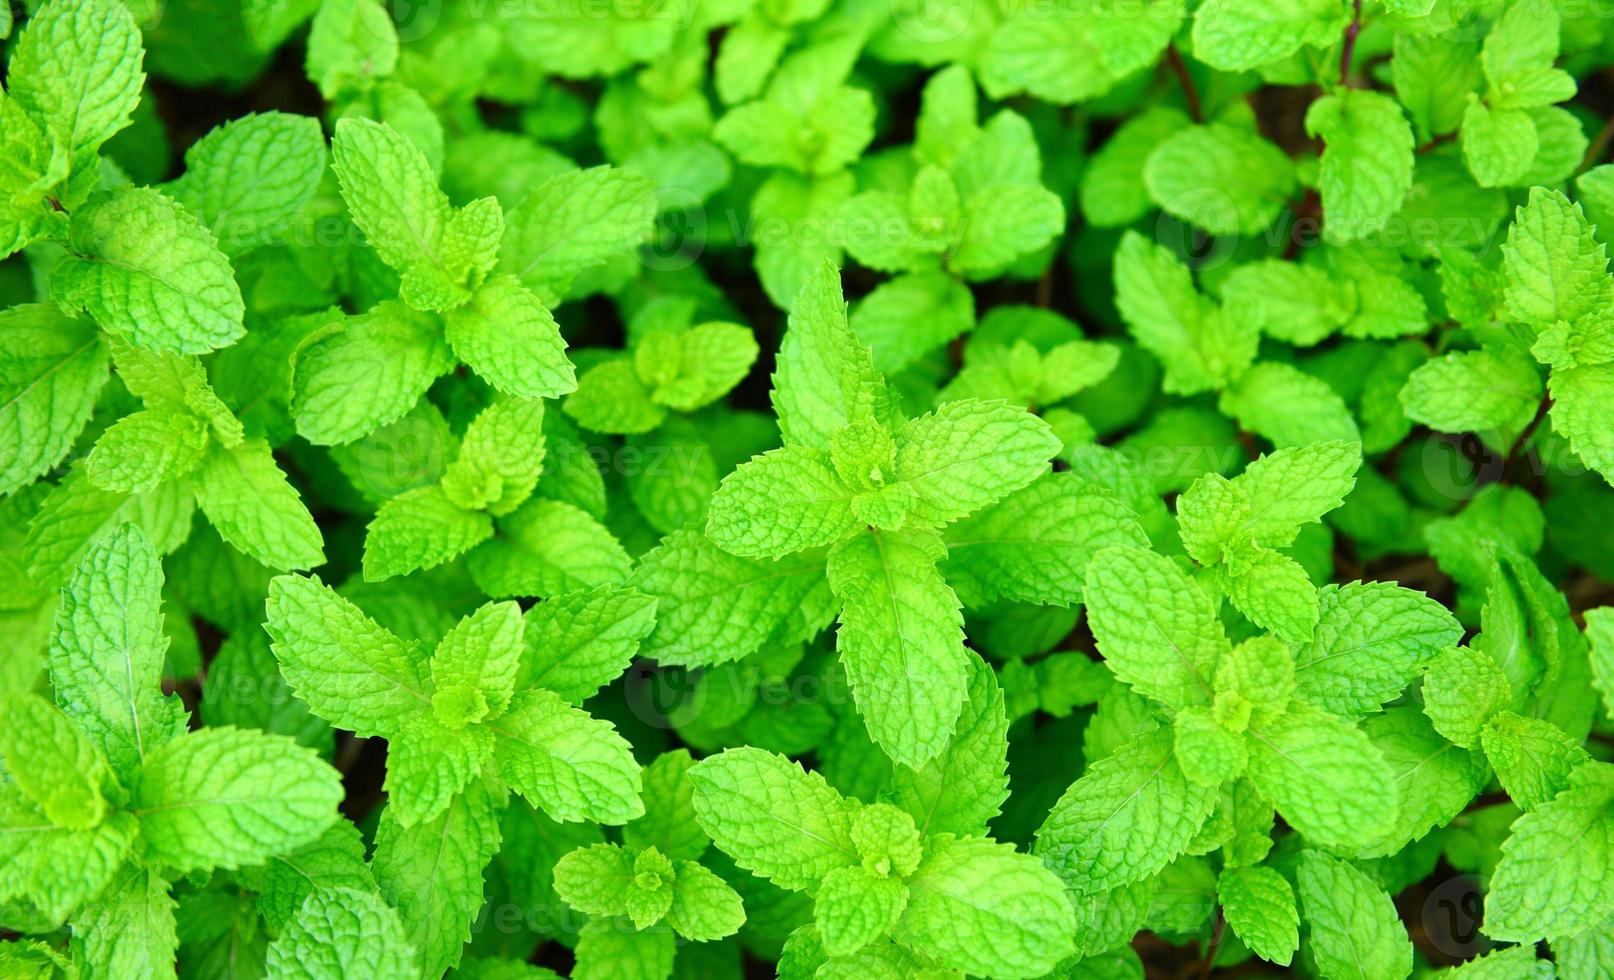 foglia di menta piperita sullo sfondo del giardino - foglie di menta fresca in una natura verde erbe o verdure alimentari foto